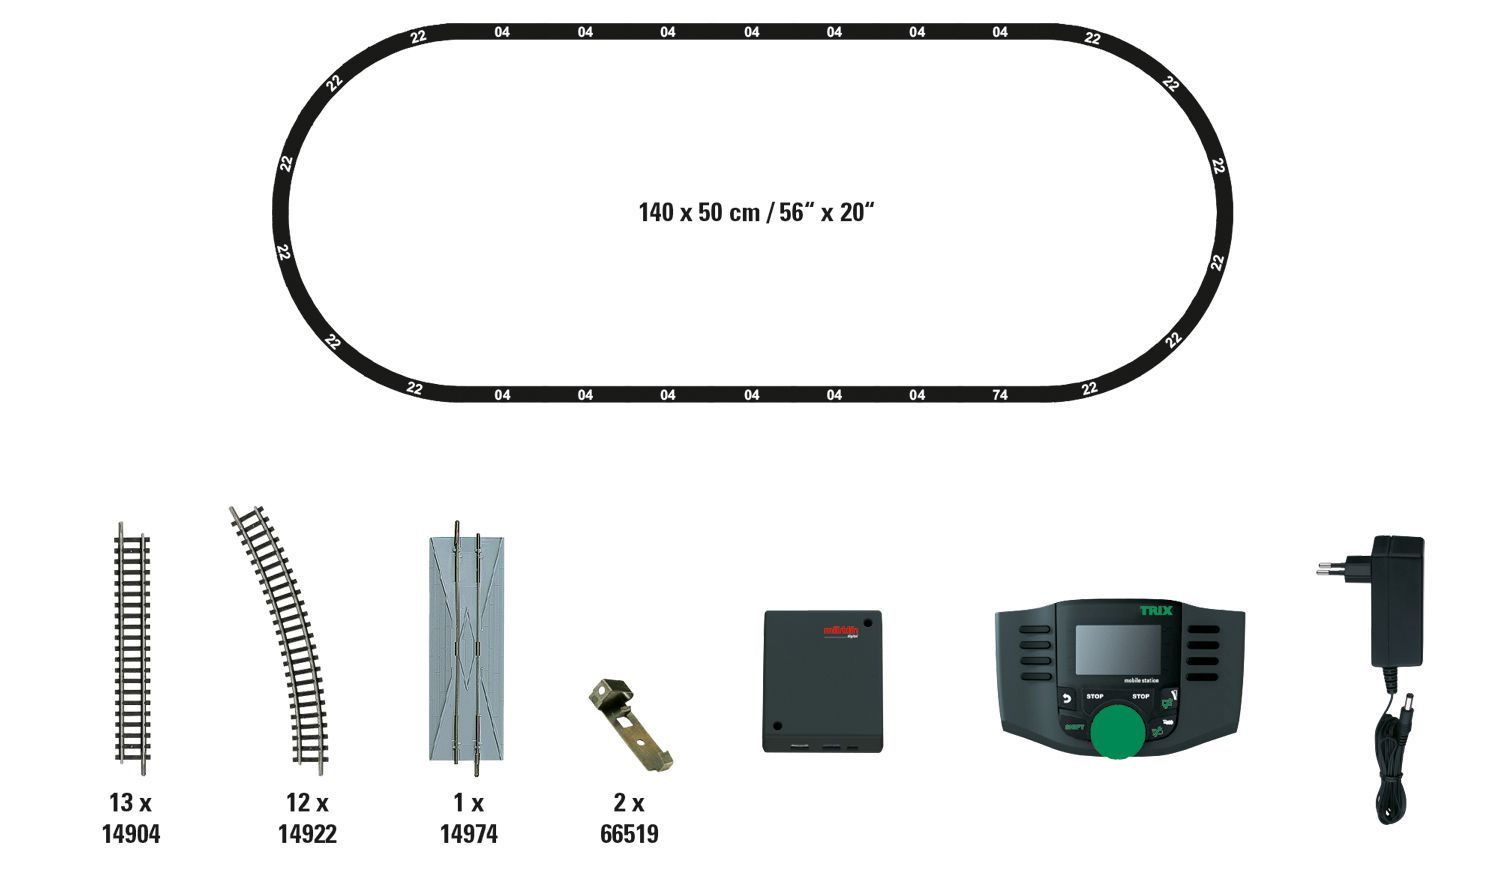 Trix 11100 - Digitales Startset mit Mobil-Station und Minitrix-Gleis